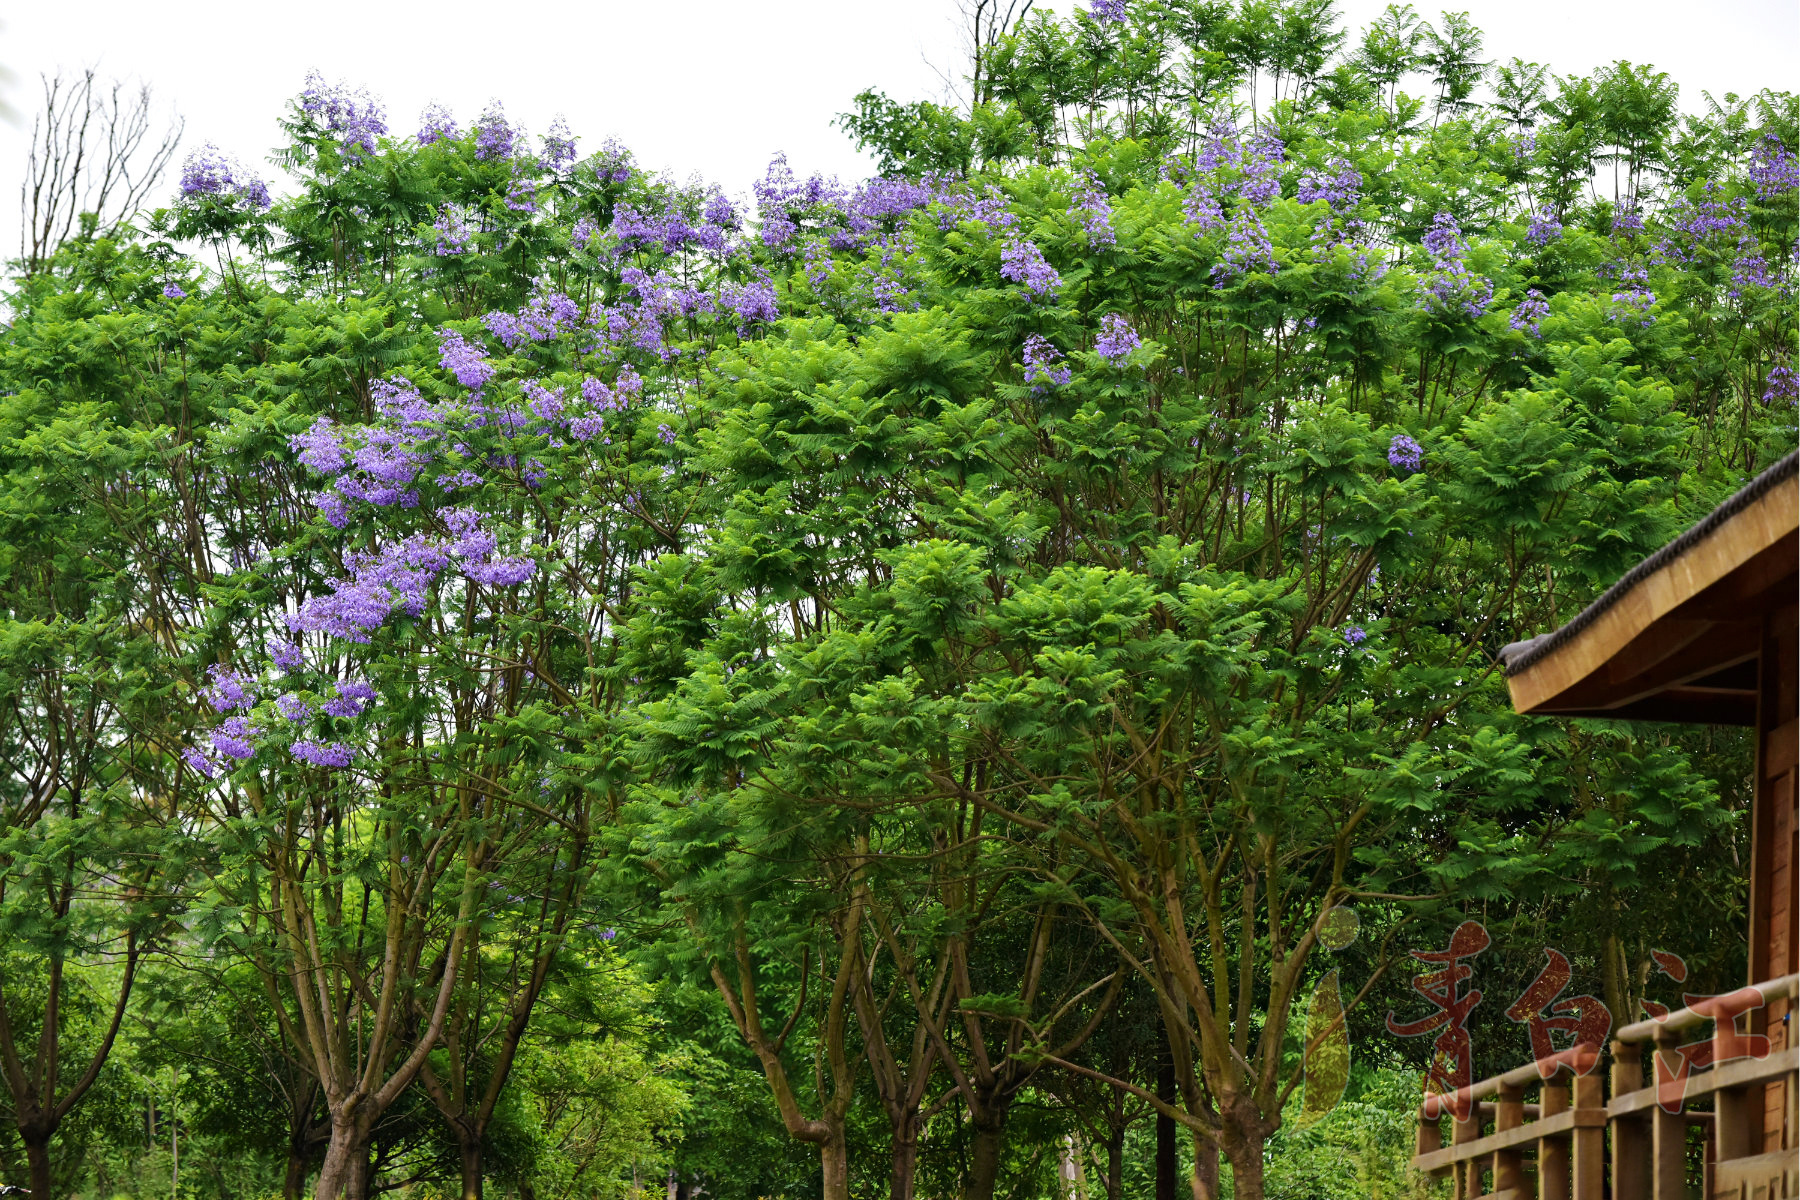 在凤凰湖湿地公园里 偶见一排蓝花楹树 满树蓝紫色花朵 在清新如羽状